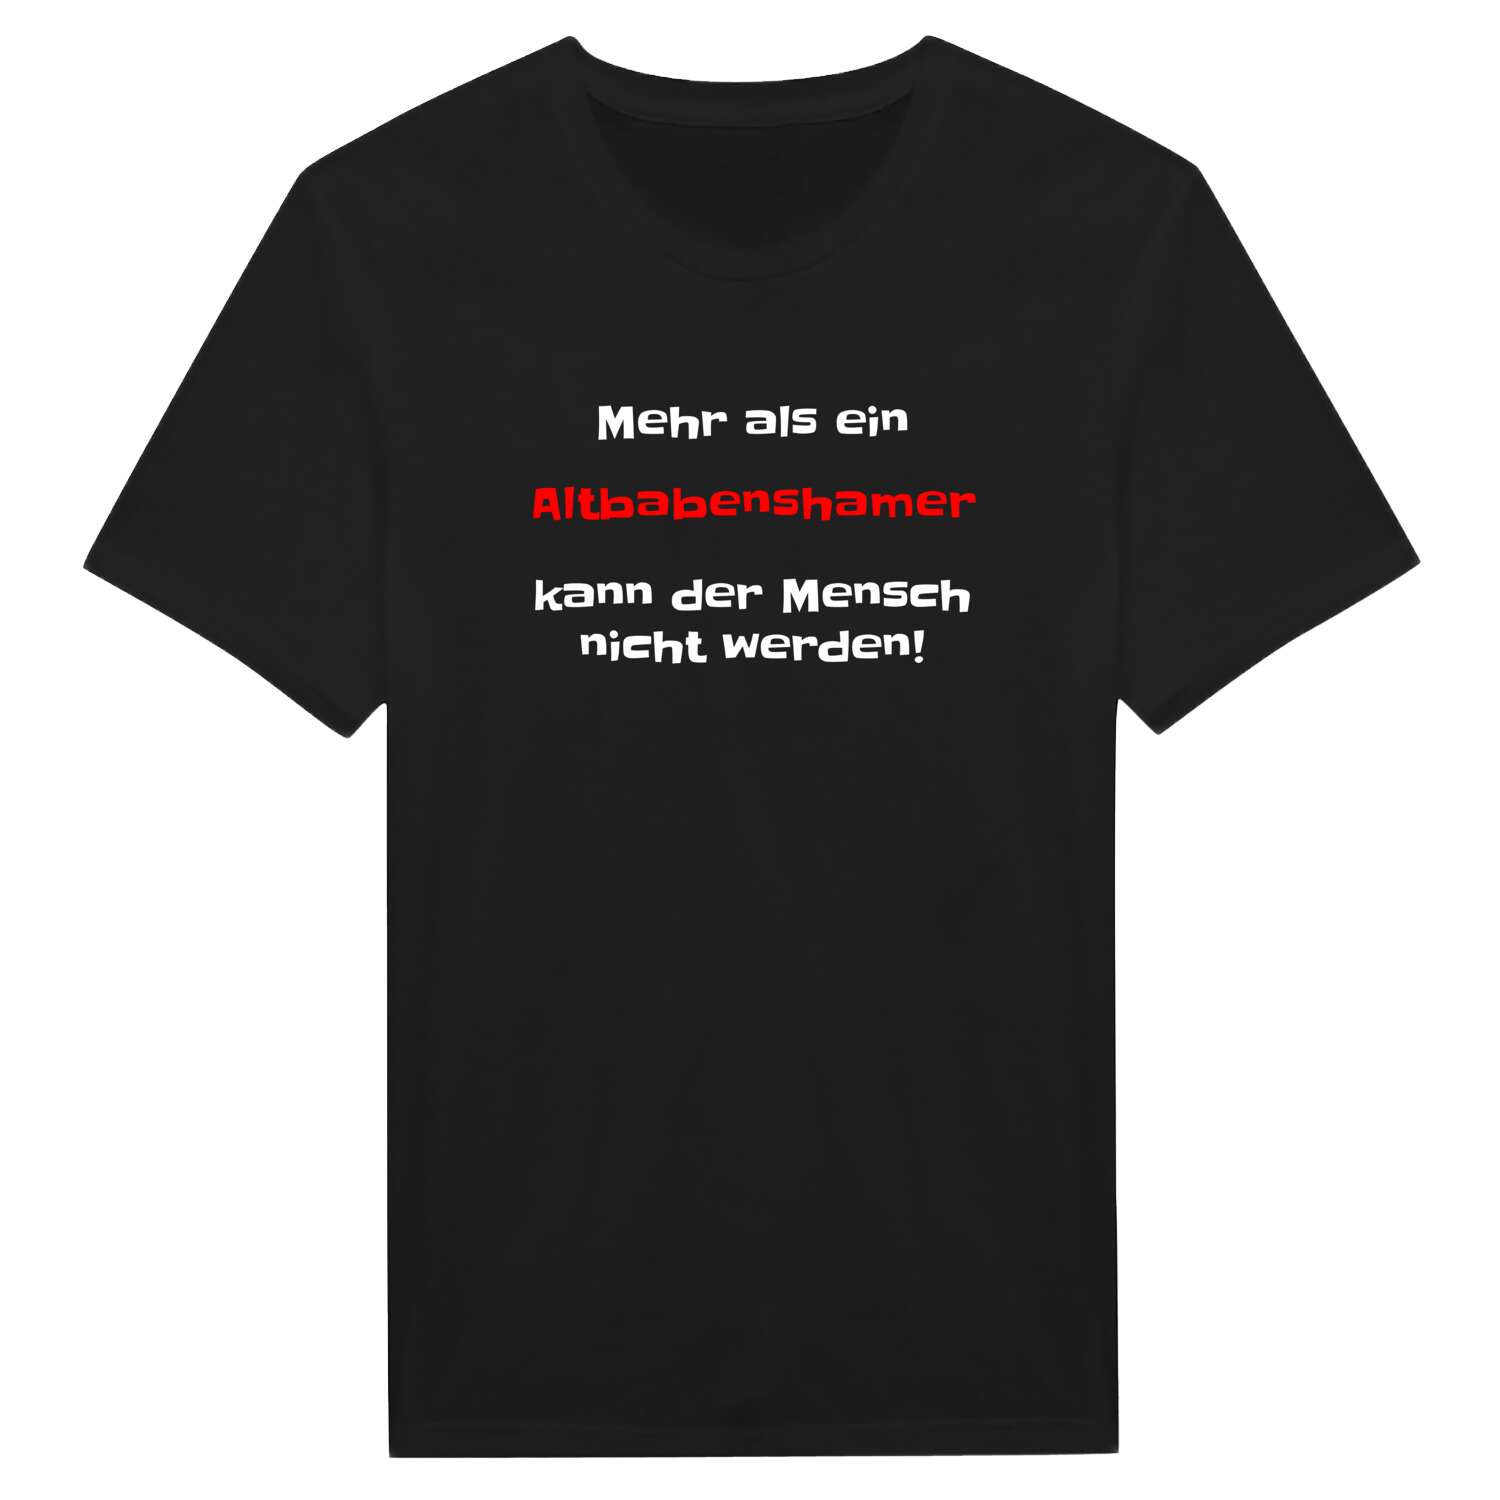 Altbabensham T-Shirt »Mehr als ein«